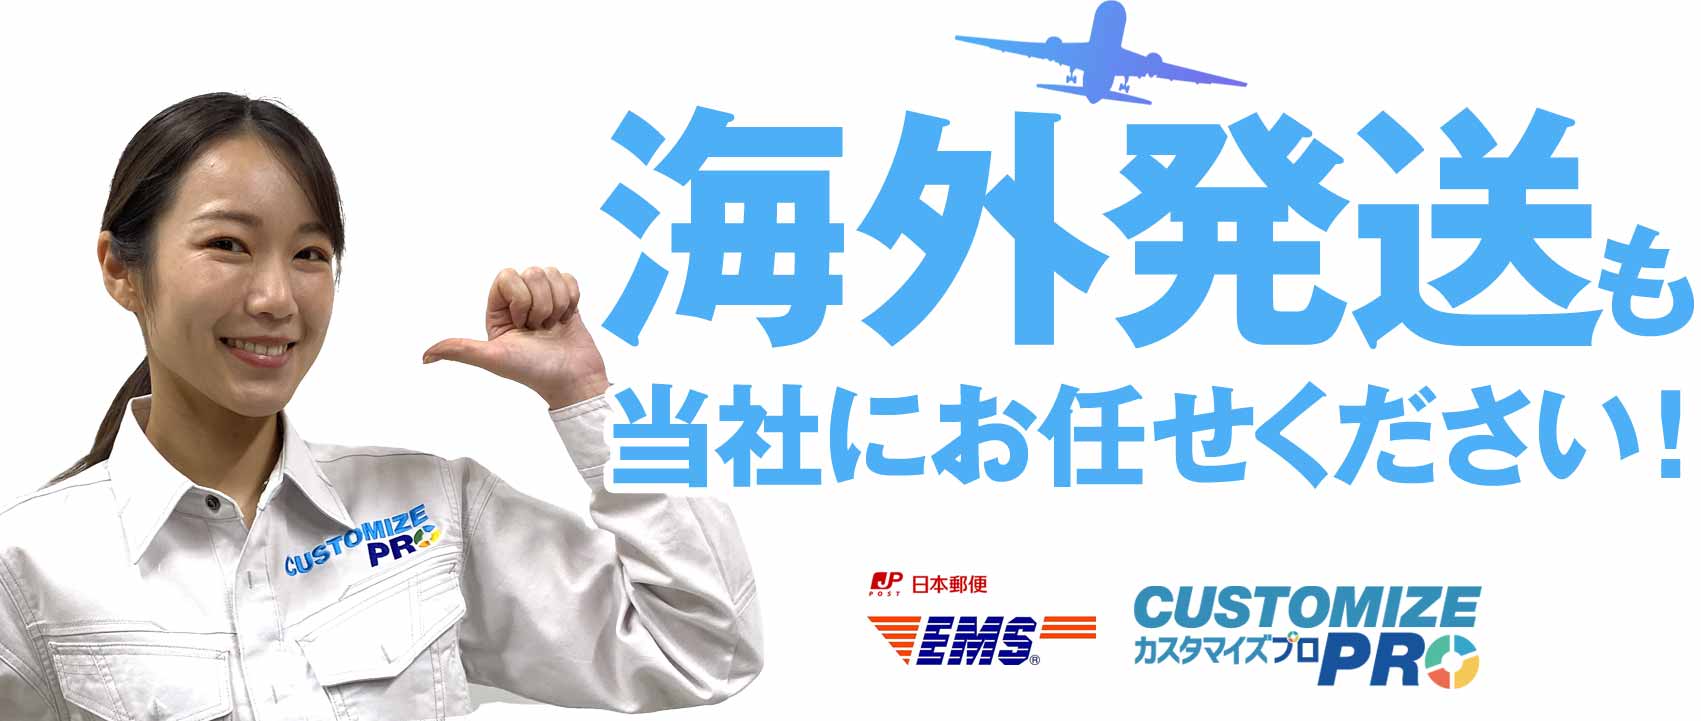 日本郵便国際スピード郵便(EMS)